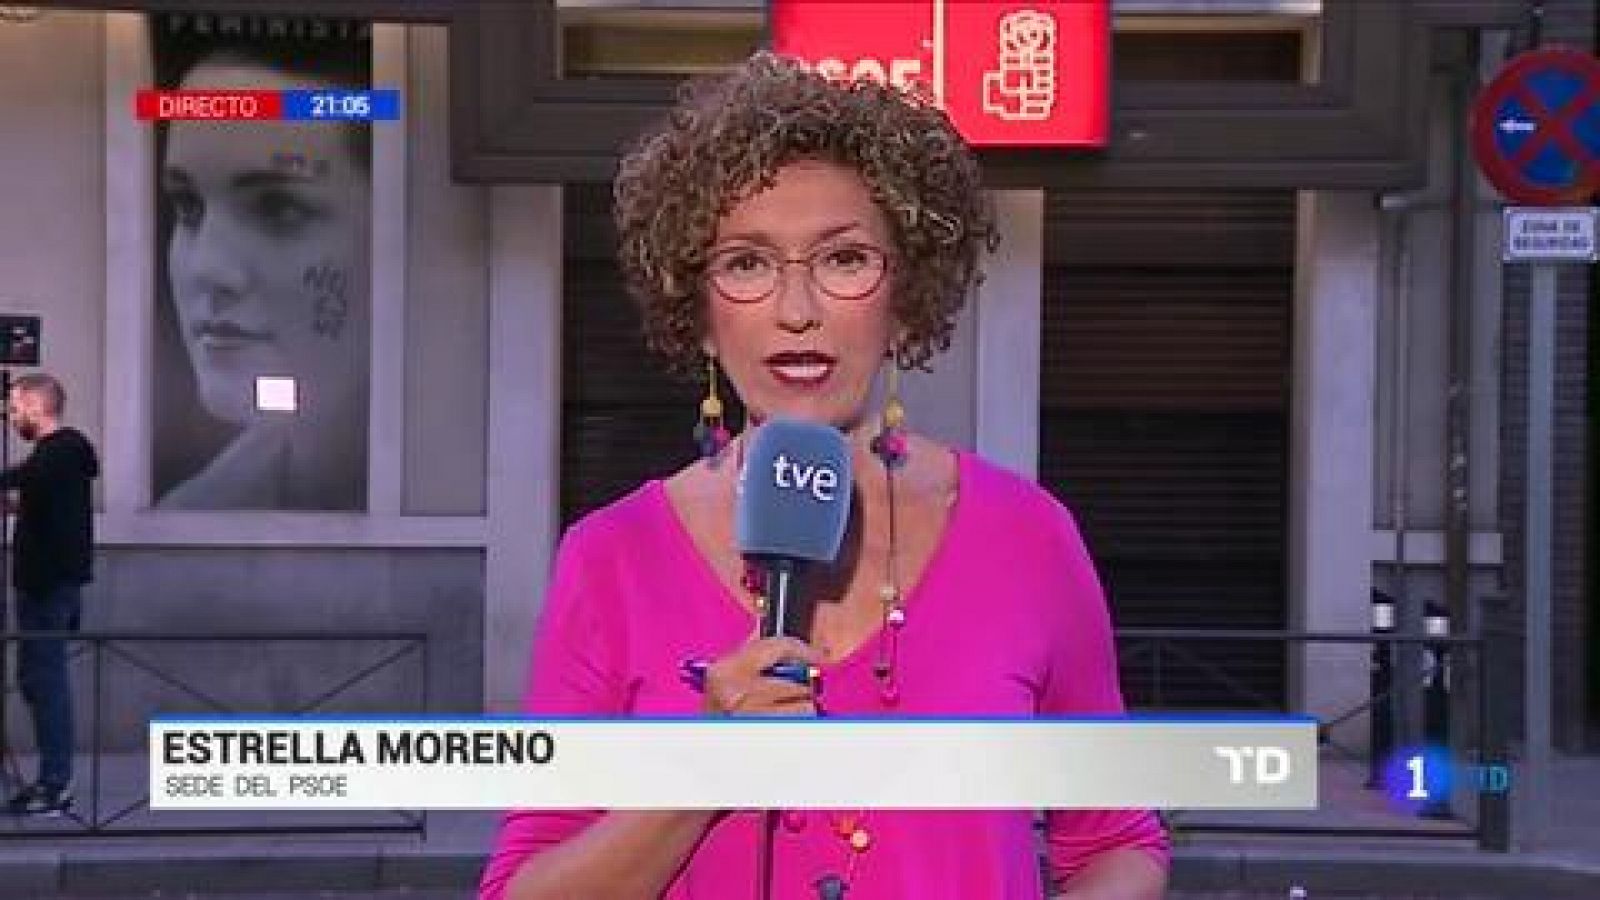 Elecciones 26M | El PSOE dice que no renuncia a nada y que hará valer sus resultados del 26M - RTVE.es